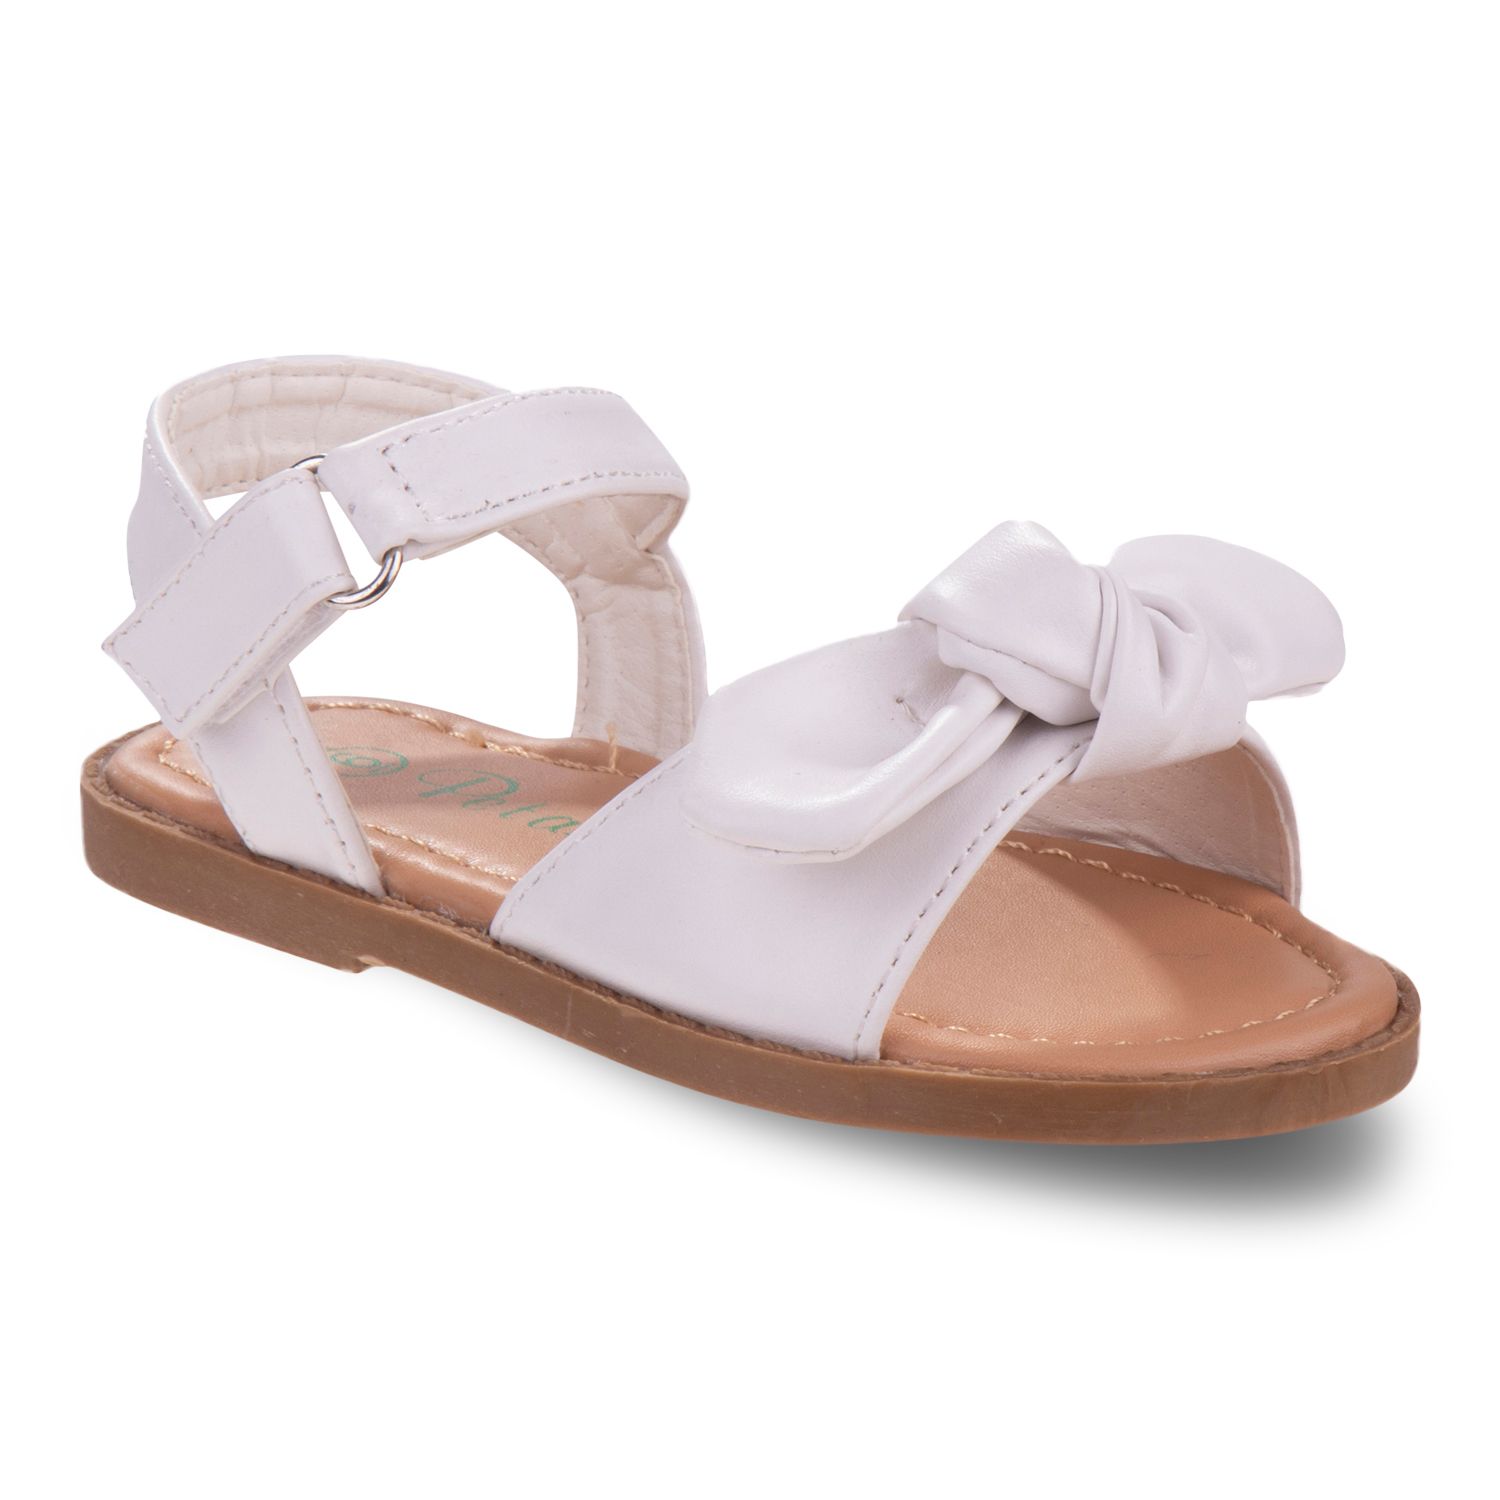 next girls white sandals